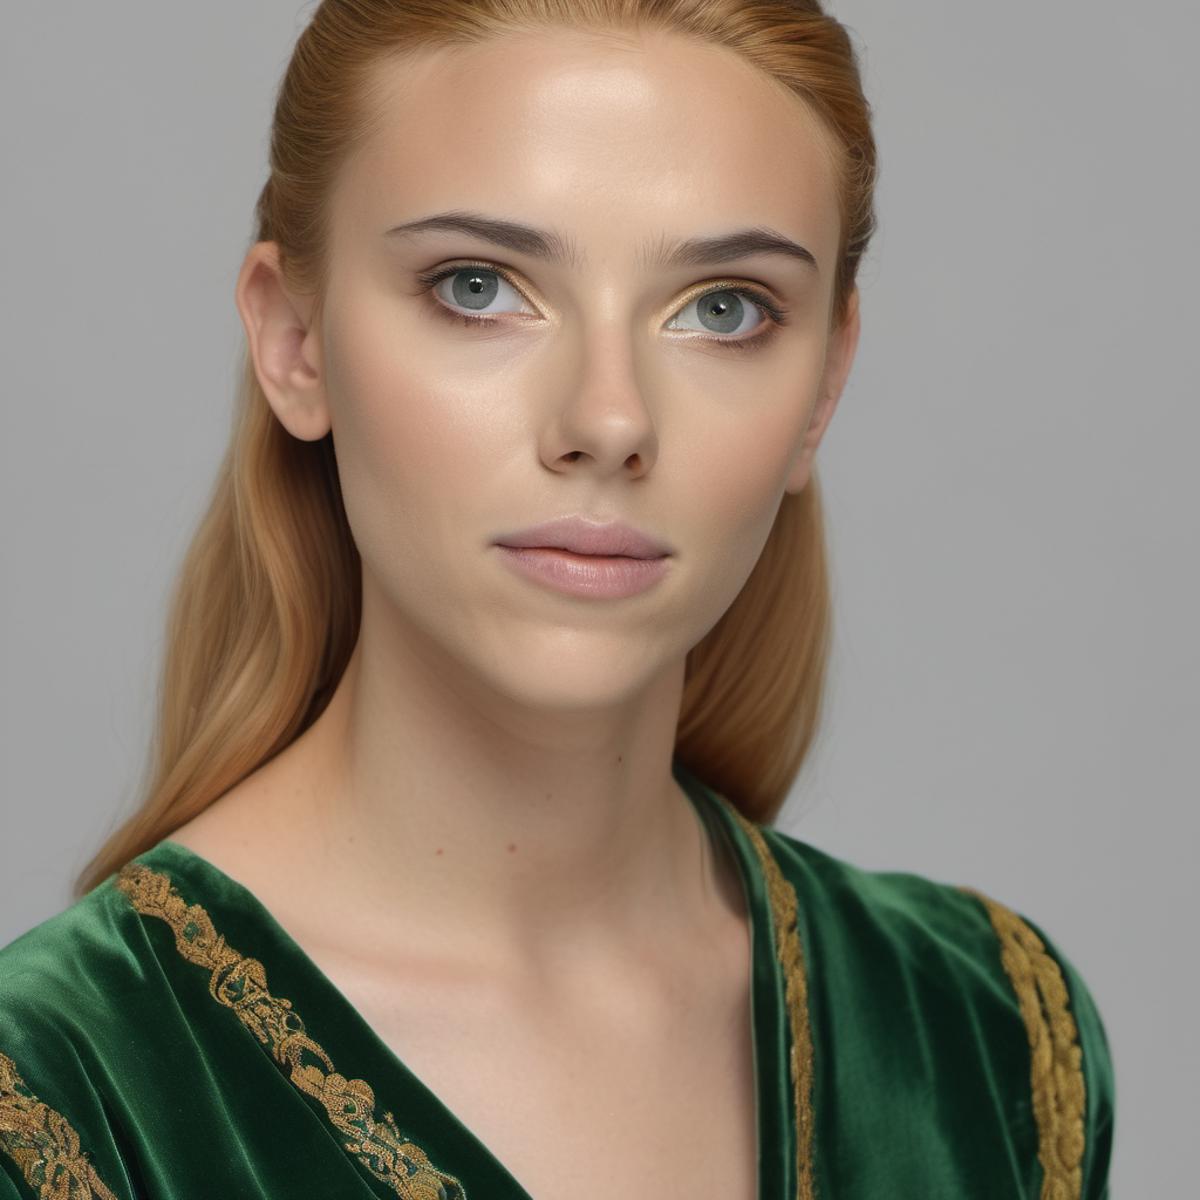 Scarlett Johansson Face SDXL image by steffangund